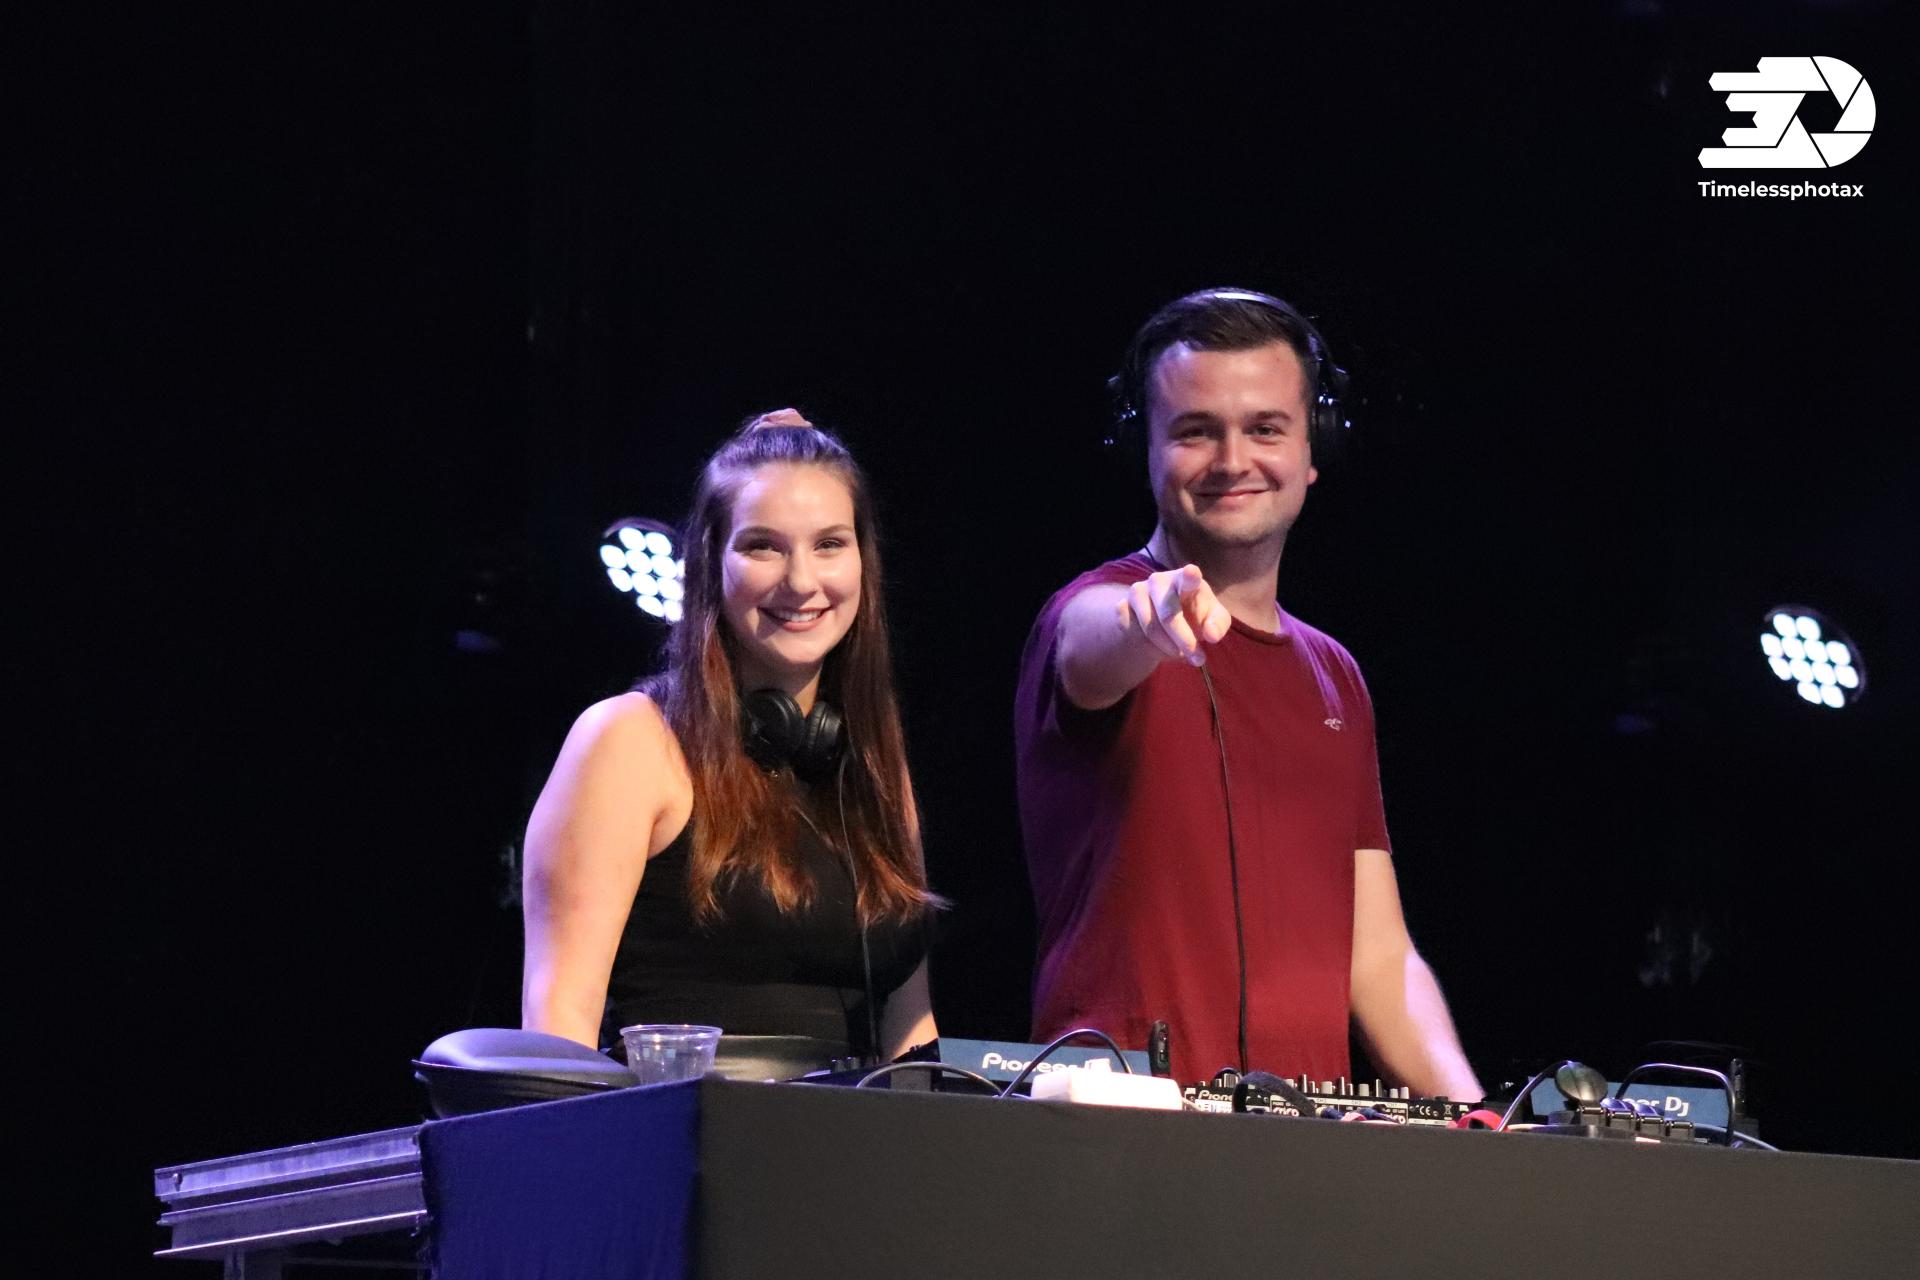 Legen am Freitag auf: Die Calauer DJs Rysann & Hedi. Foto: Timelessphotax